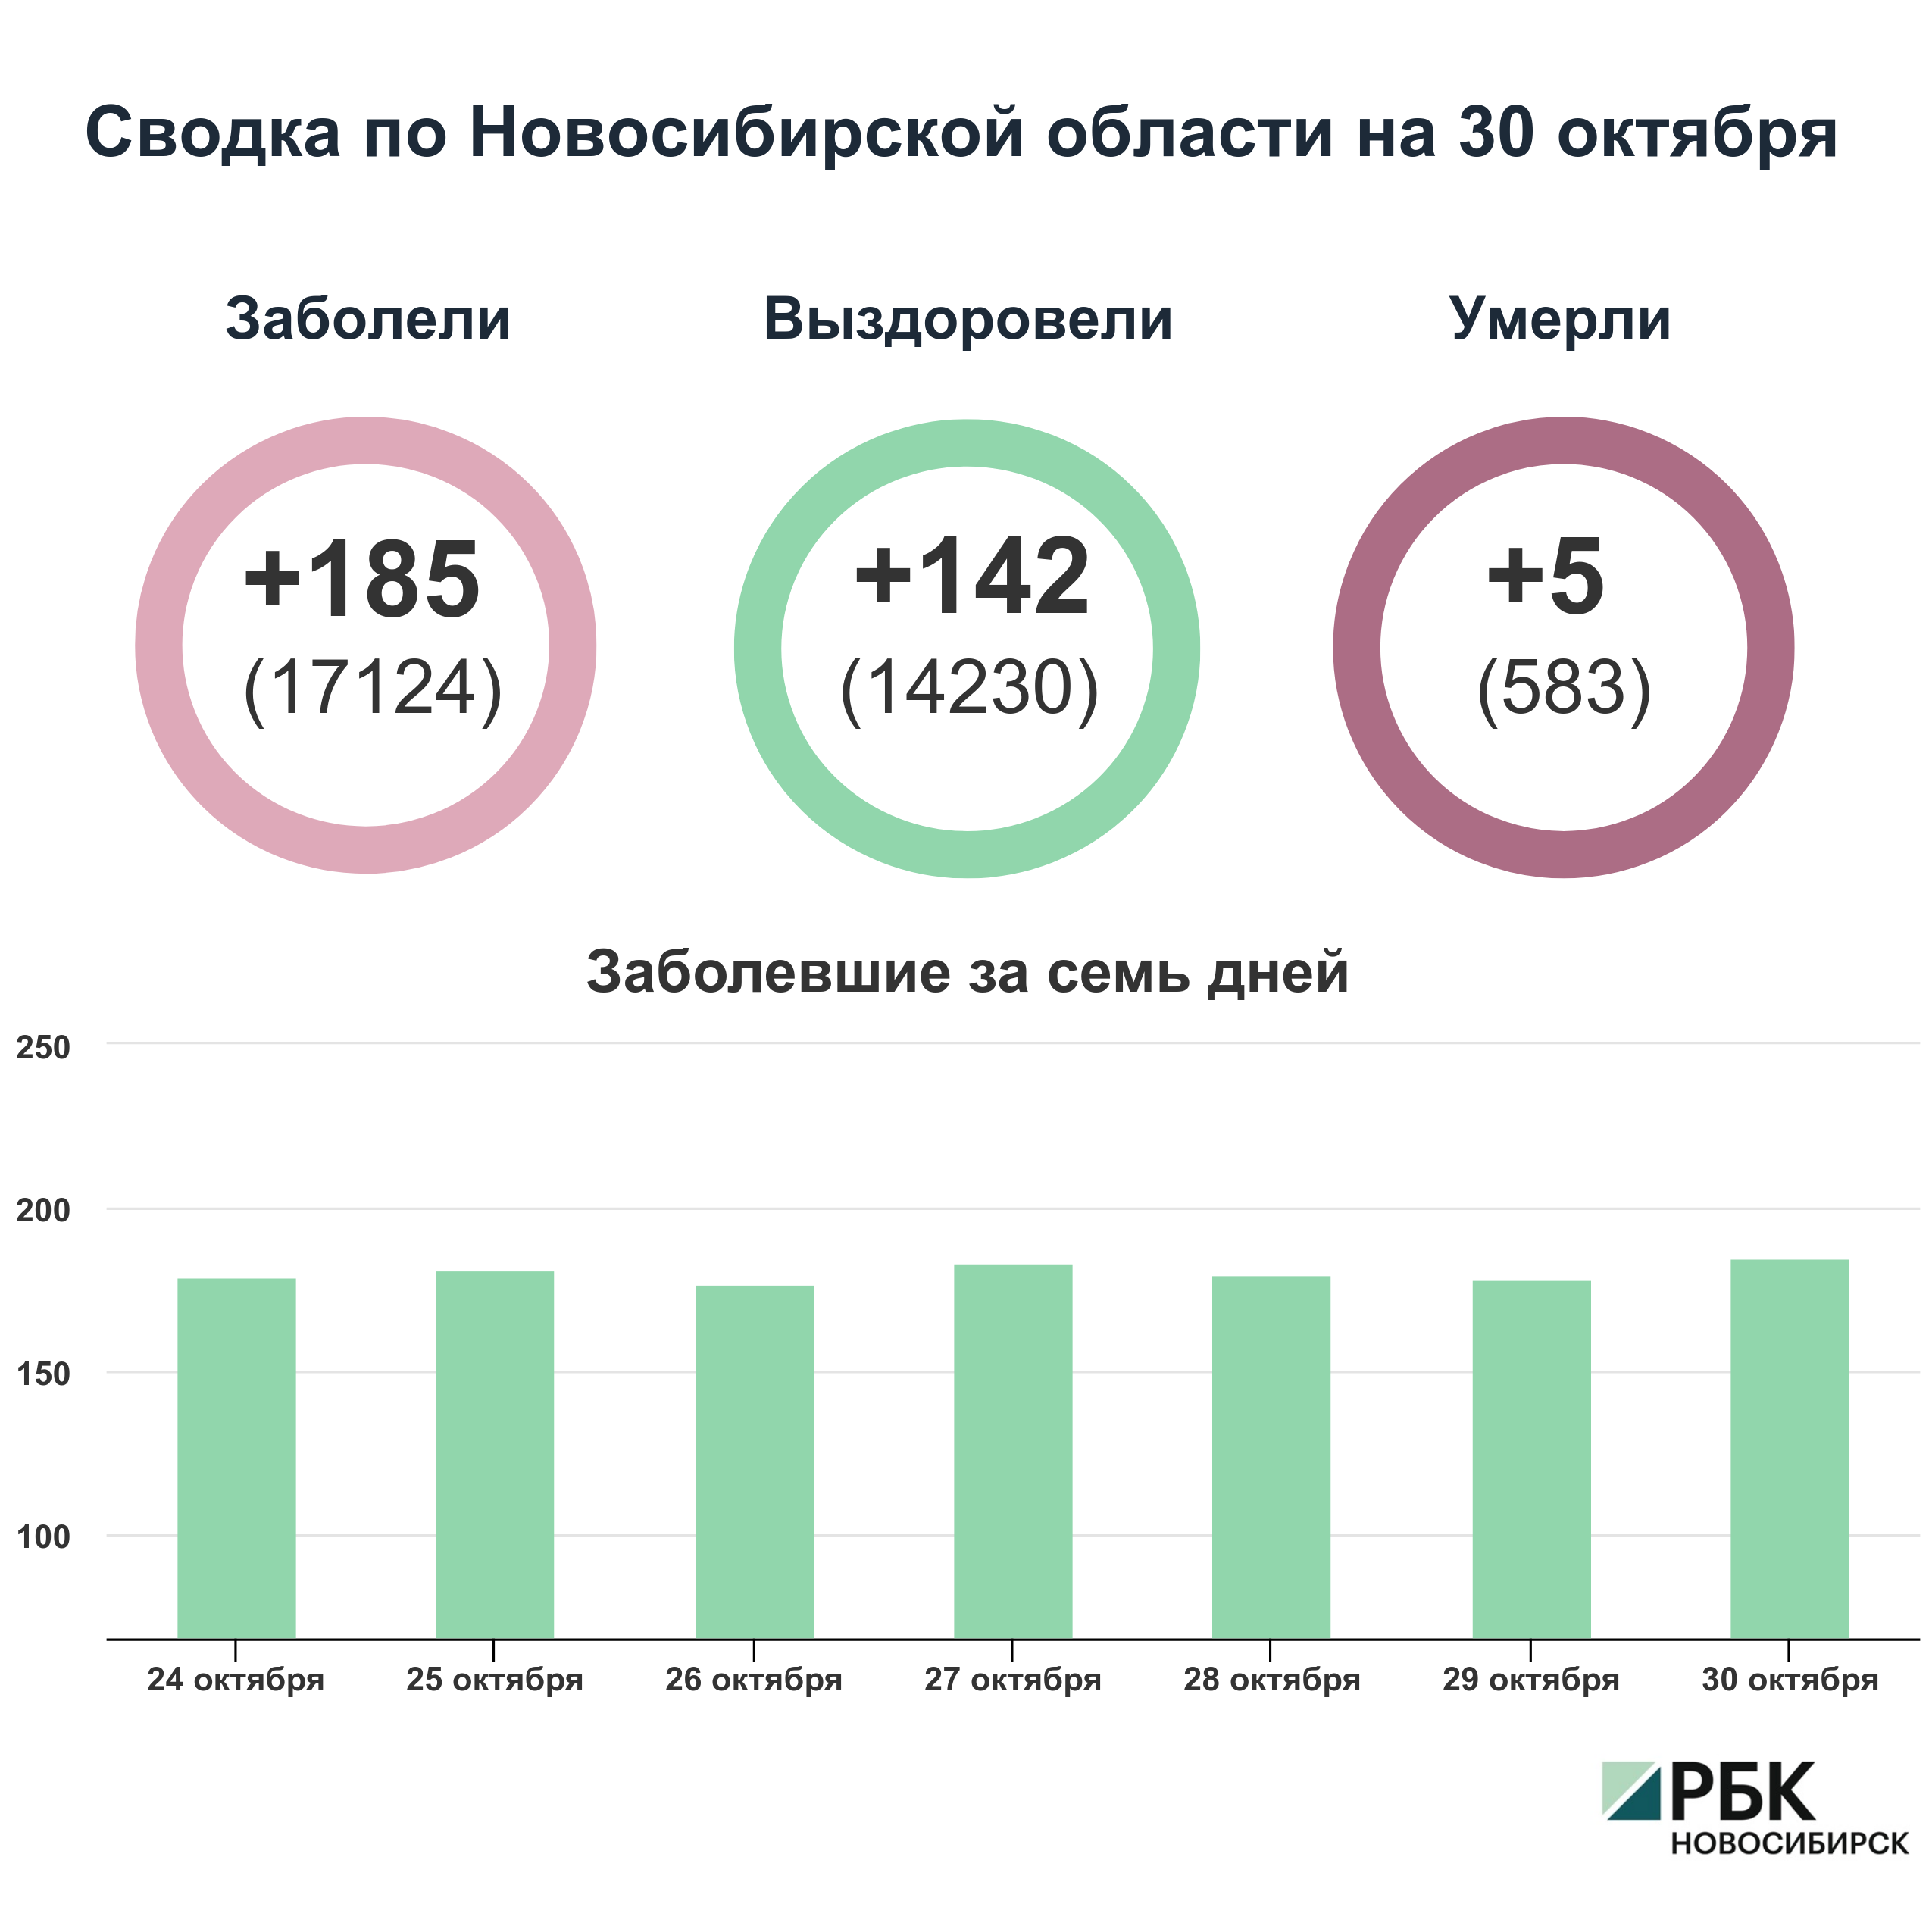 Коронавирус в Новосибирске: сводка на 30 октября